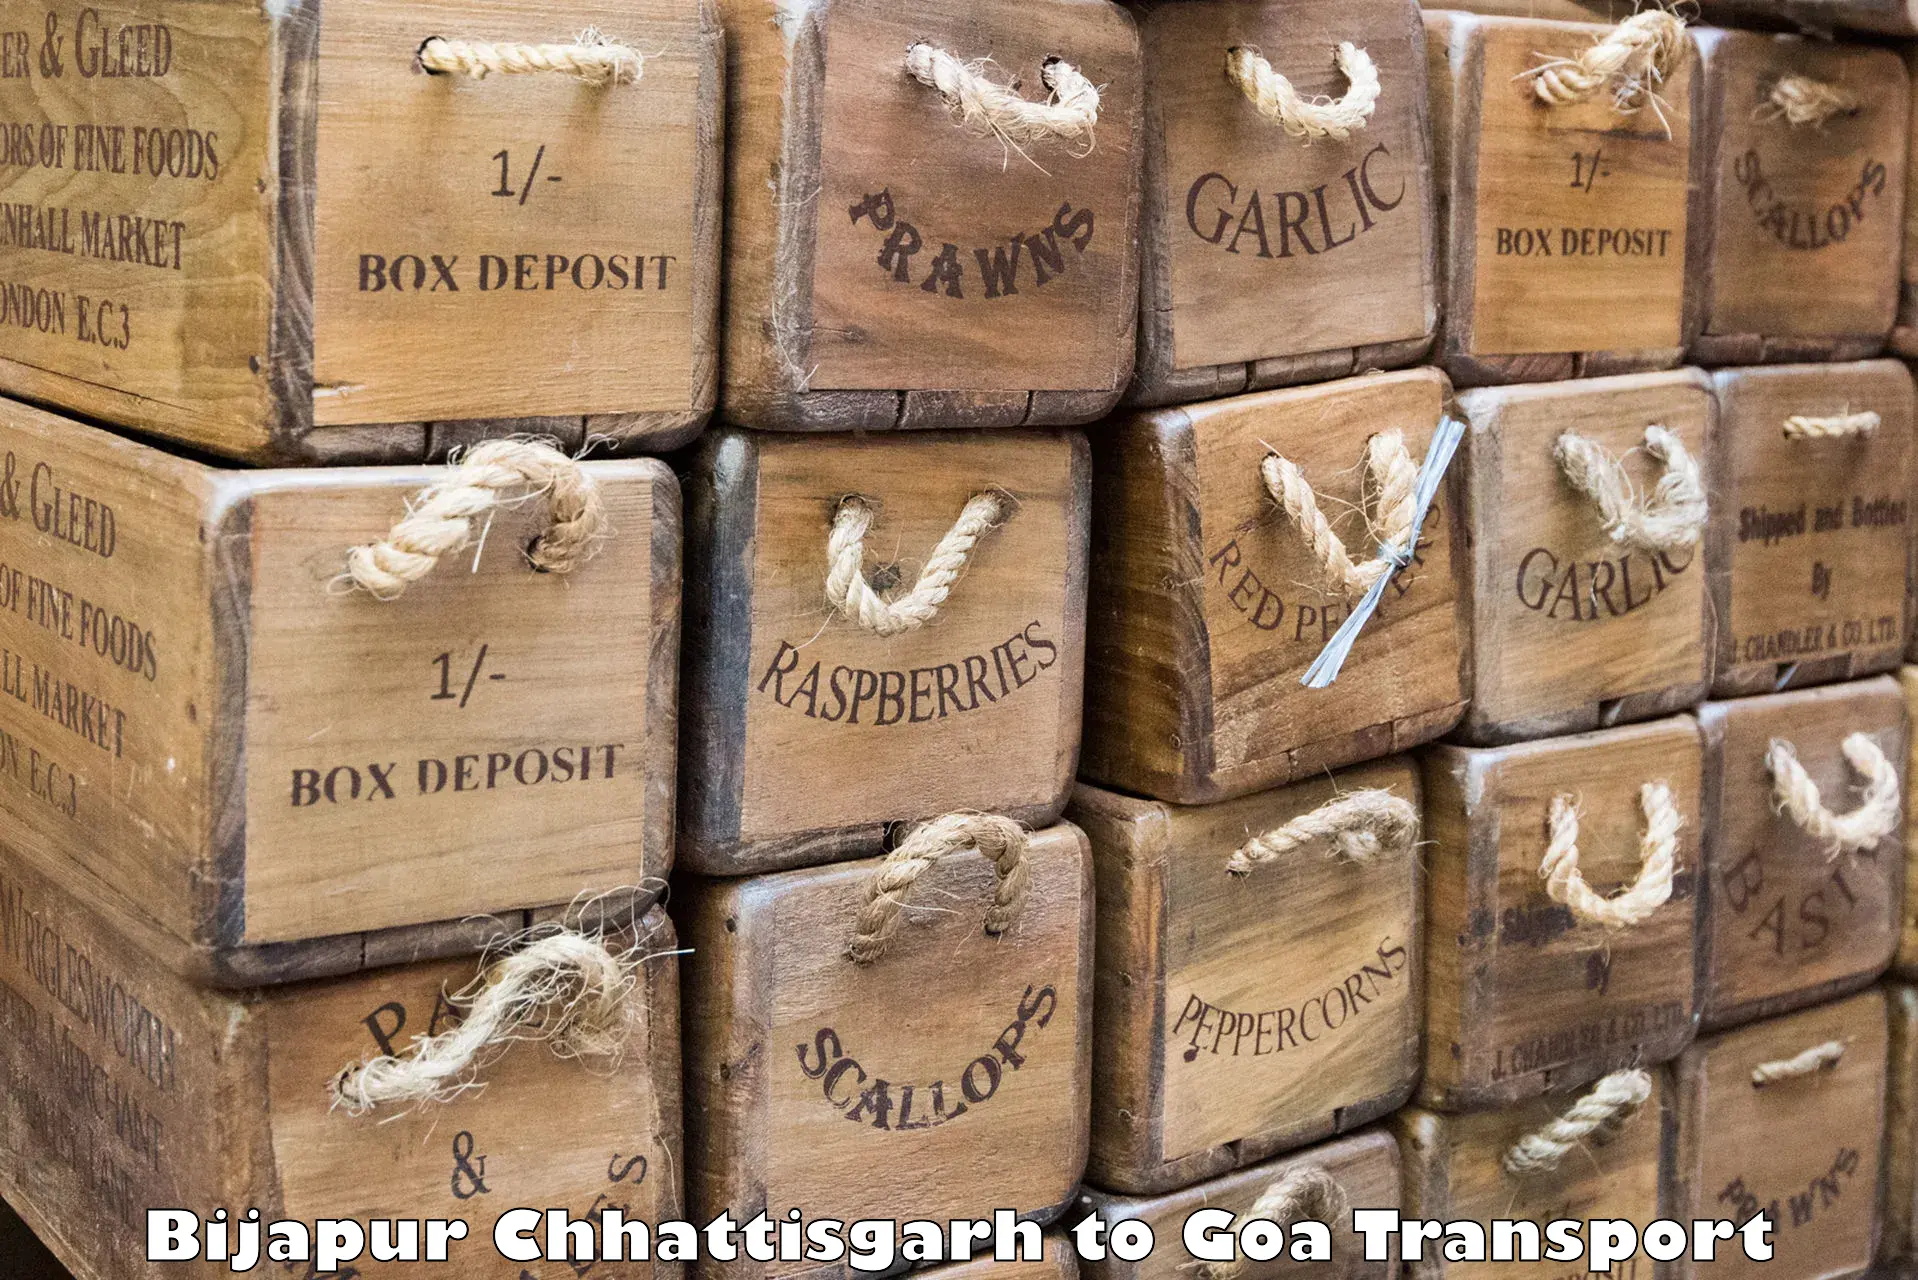 Interstate transport services Bijapur Chhattisgarh to Bicholim